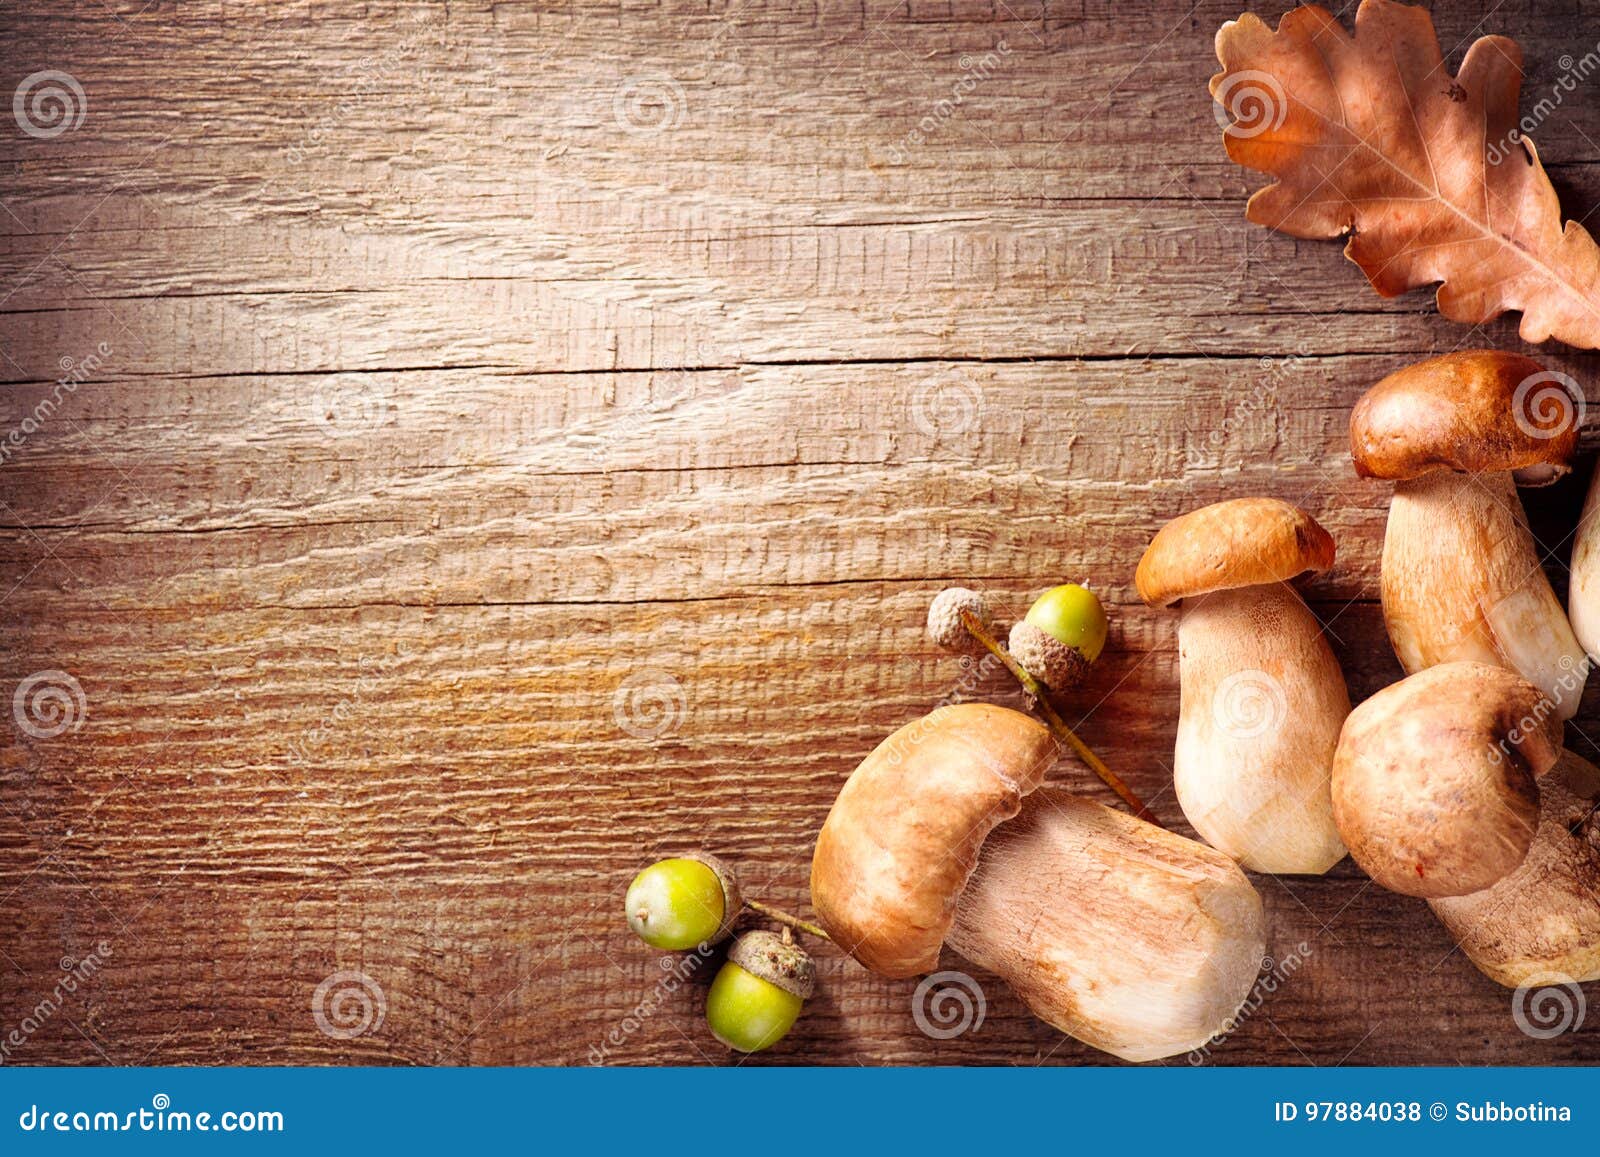 ceps mushroom. boletus on wooden rustic table